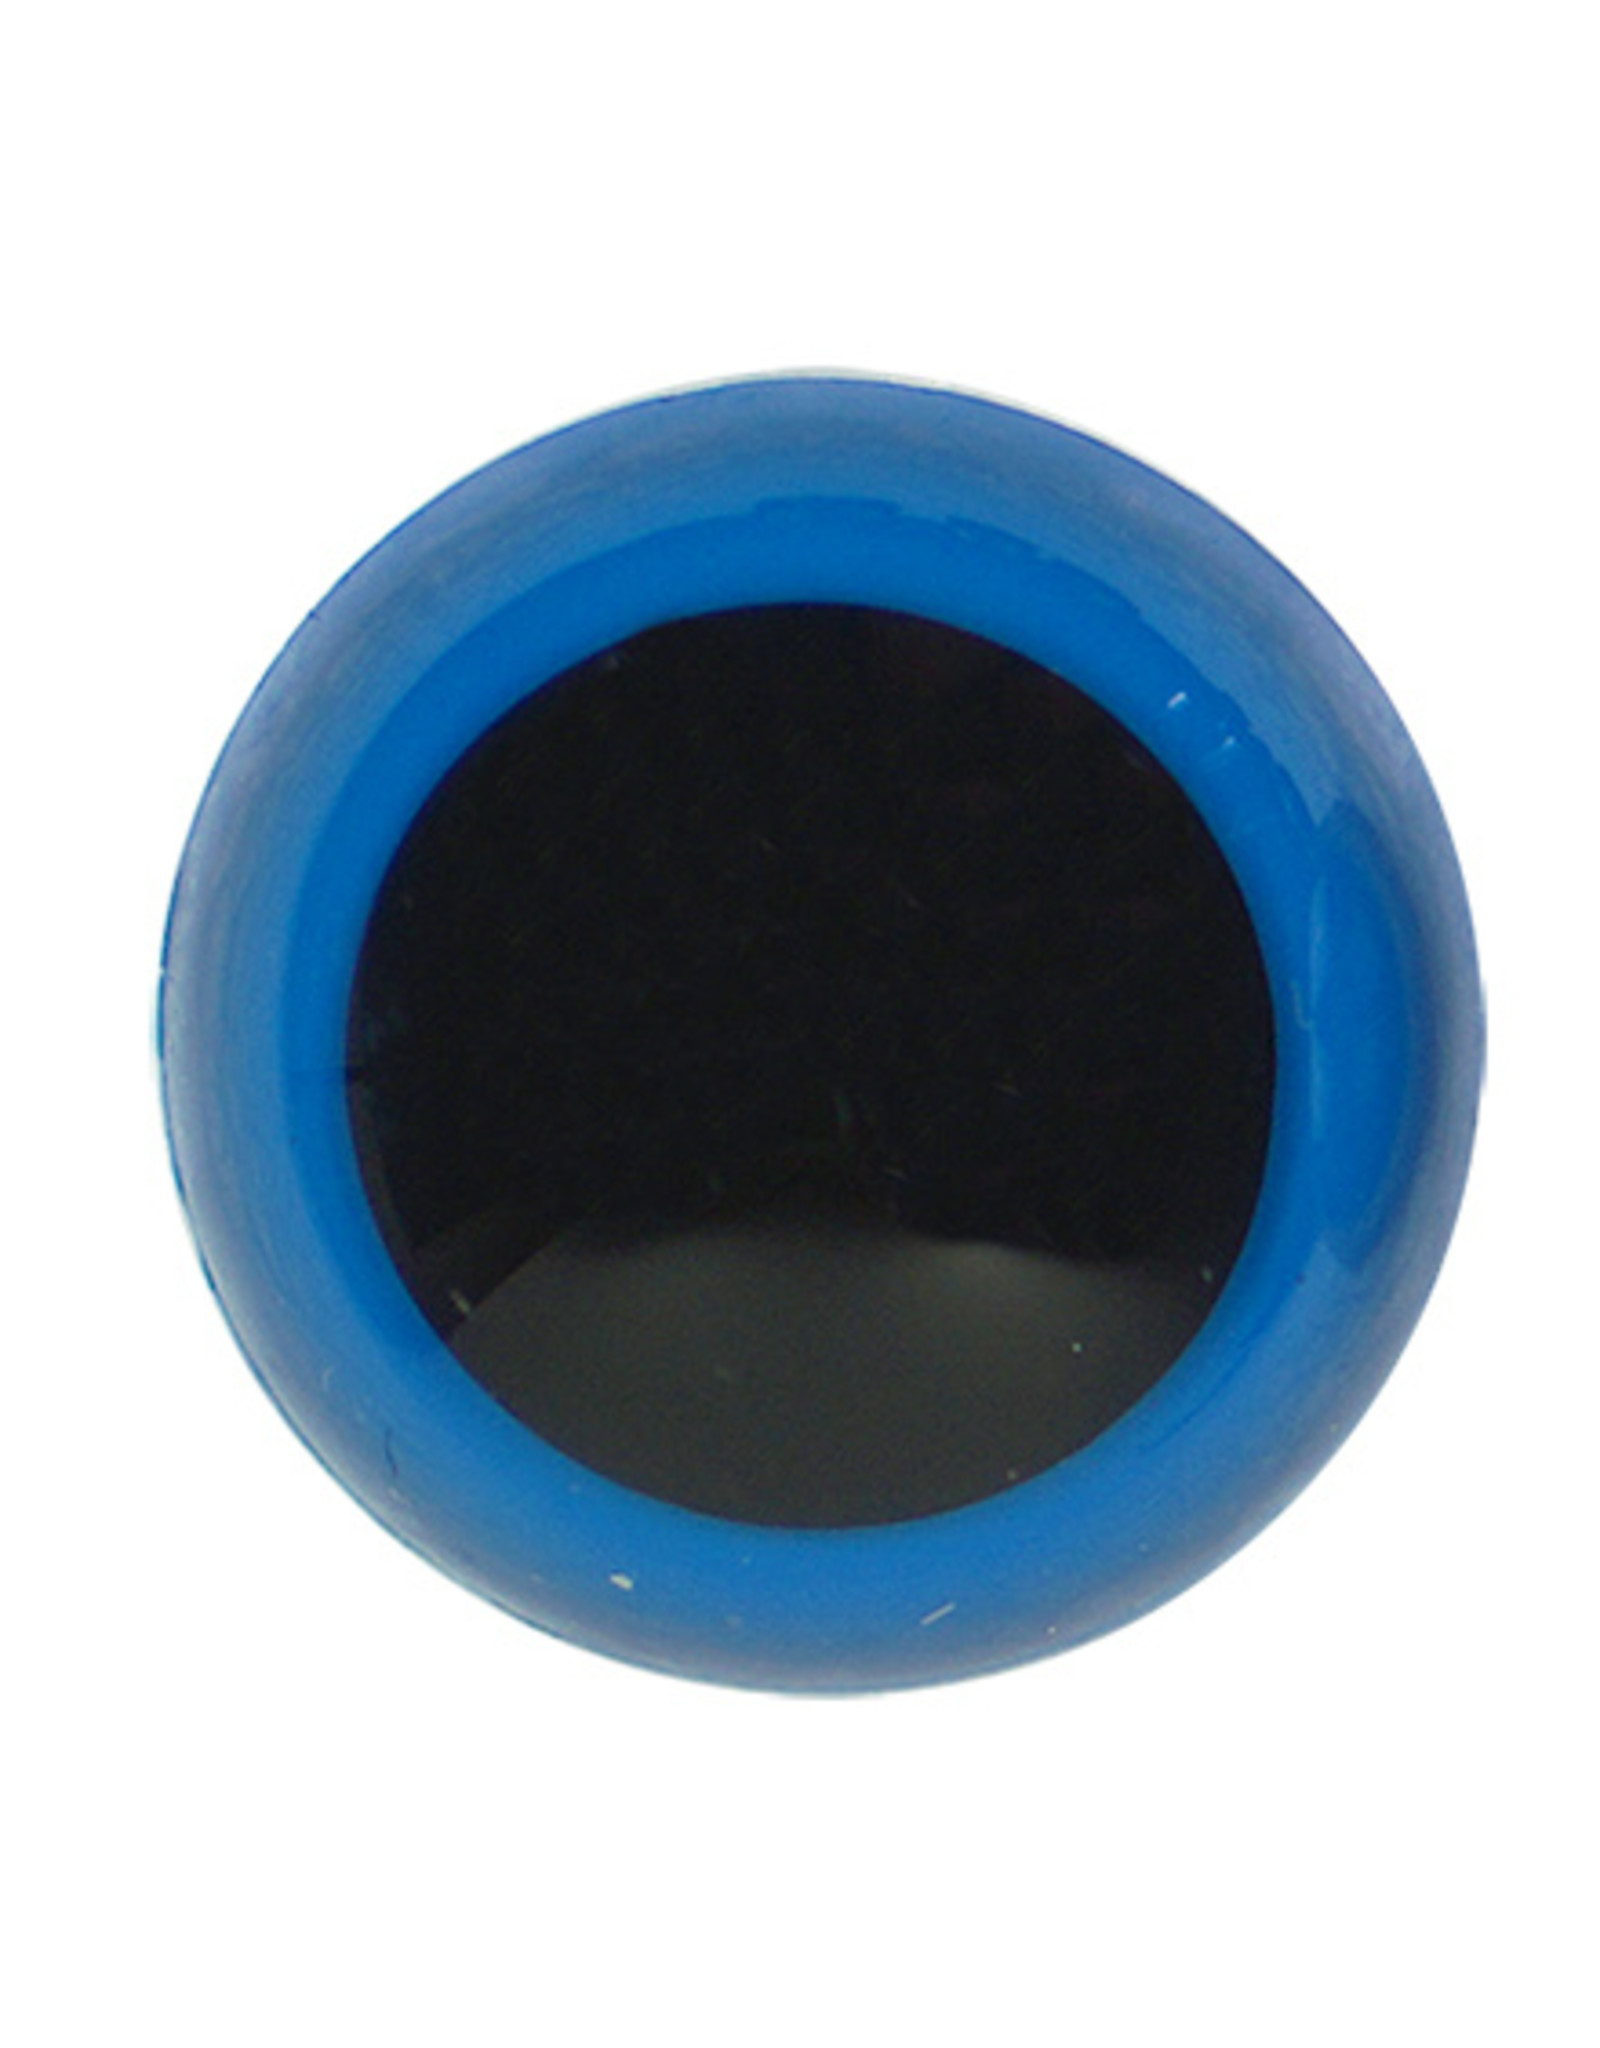 Veiligheidsogen zwart met blauwe rand 8mm 10st.